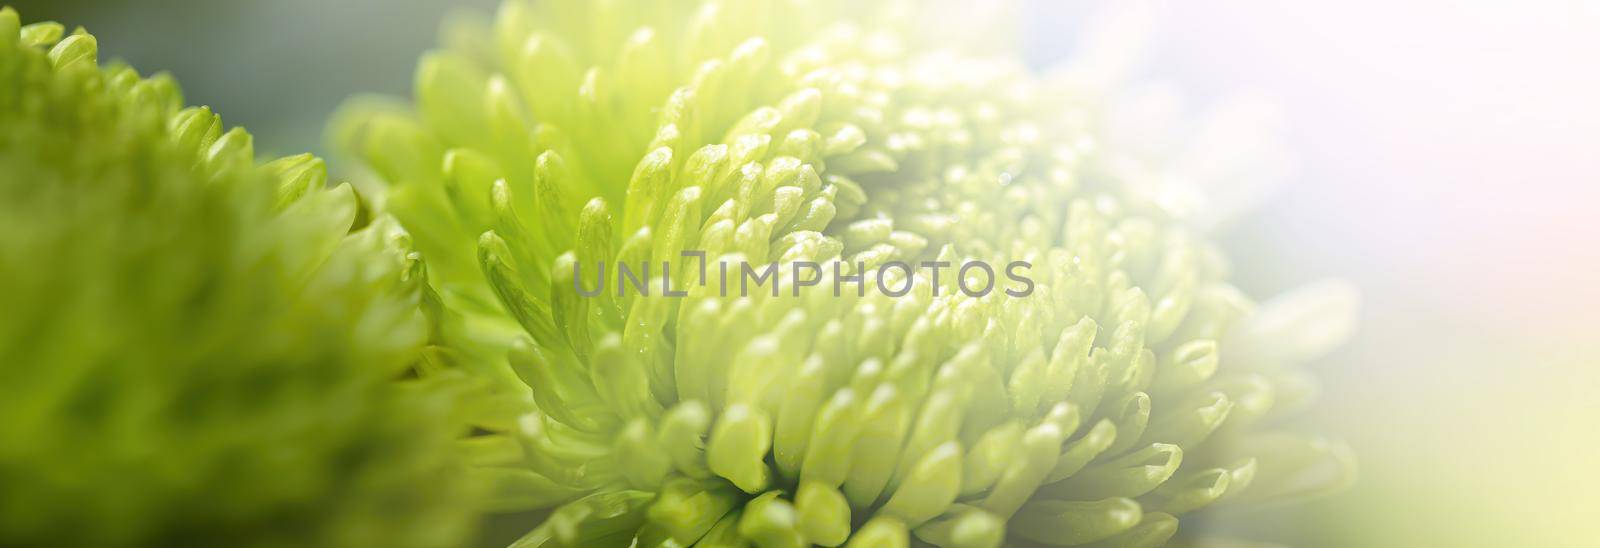 green dahlia in sunlight by palinchak